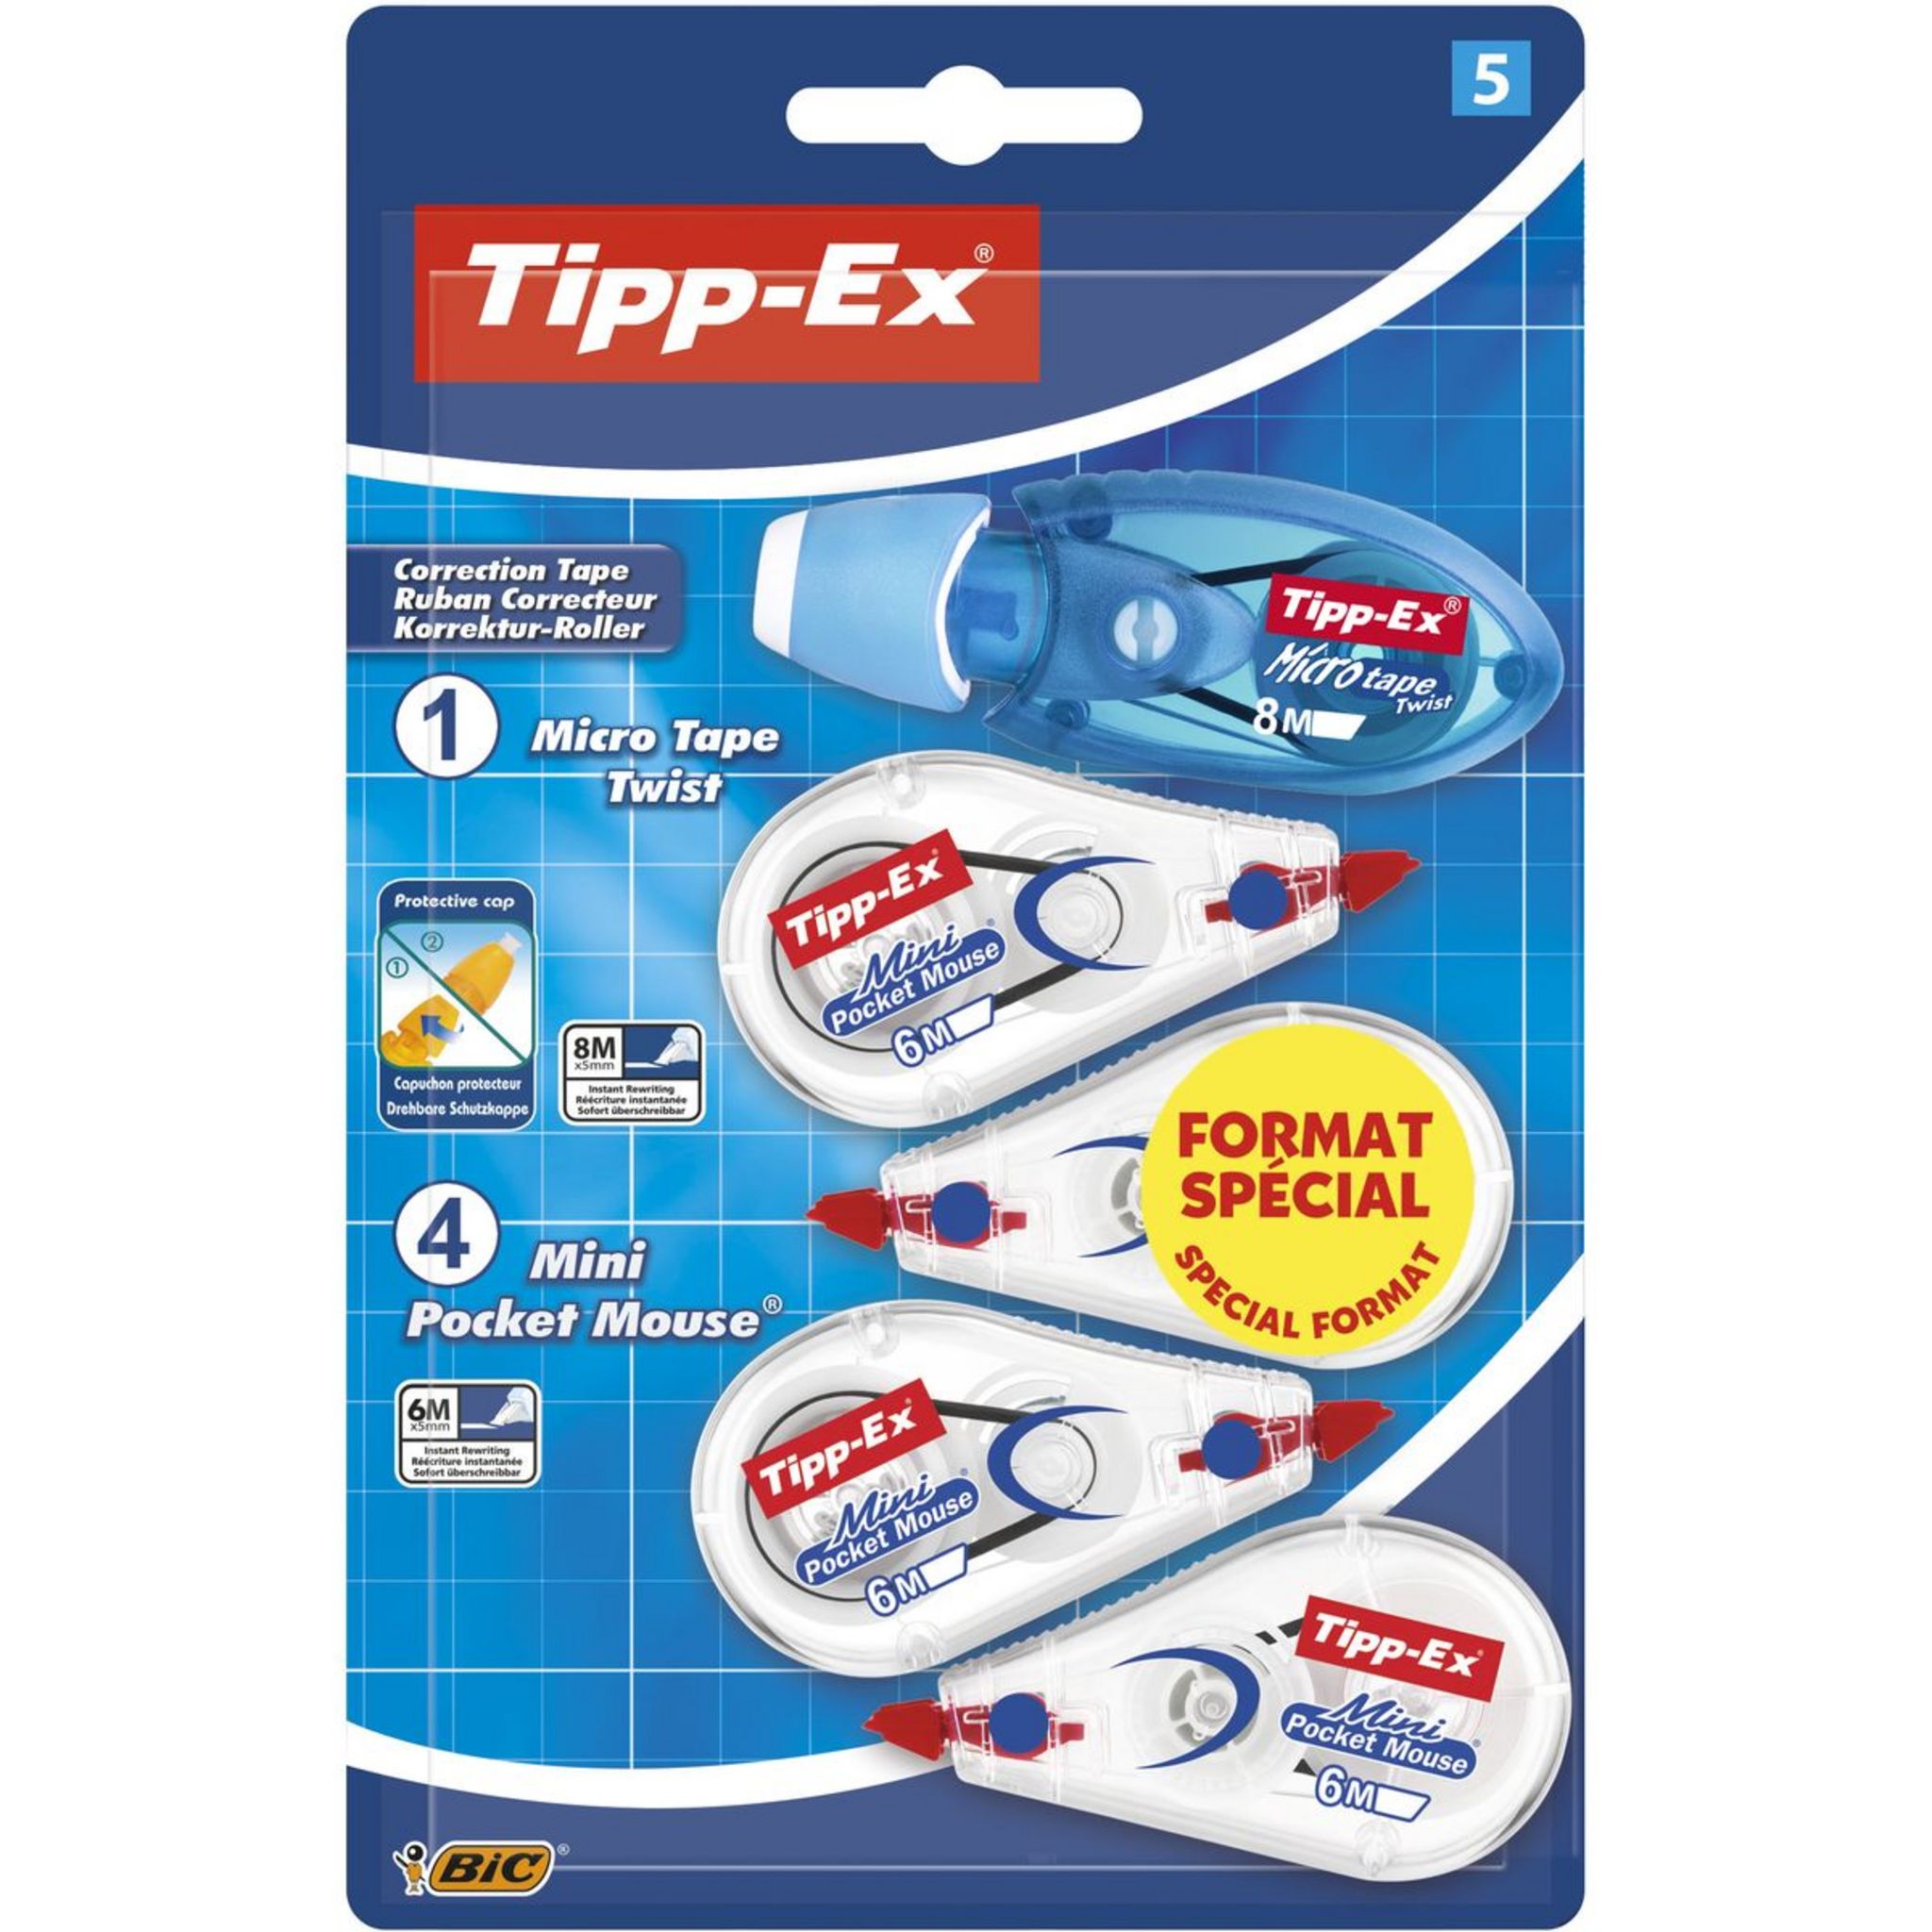 TIPP-EX Lot de 3 souris correctrices 8m avec capuchon Micro Tape Twist bleu  et vert pas cher 